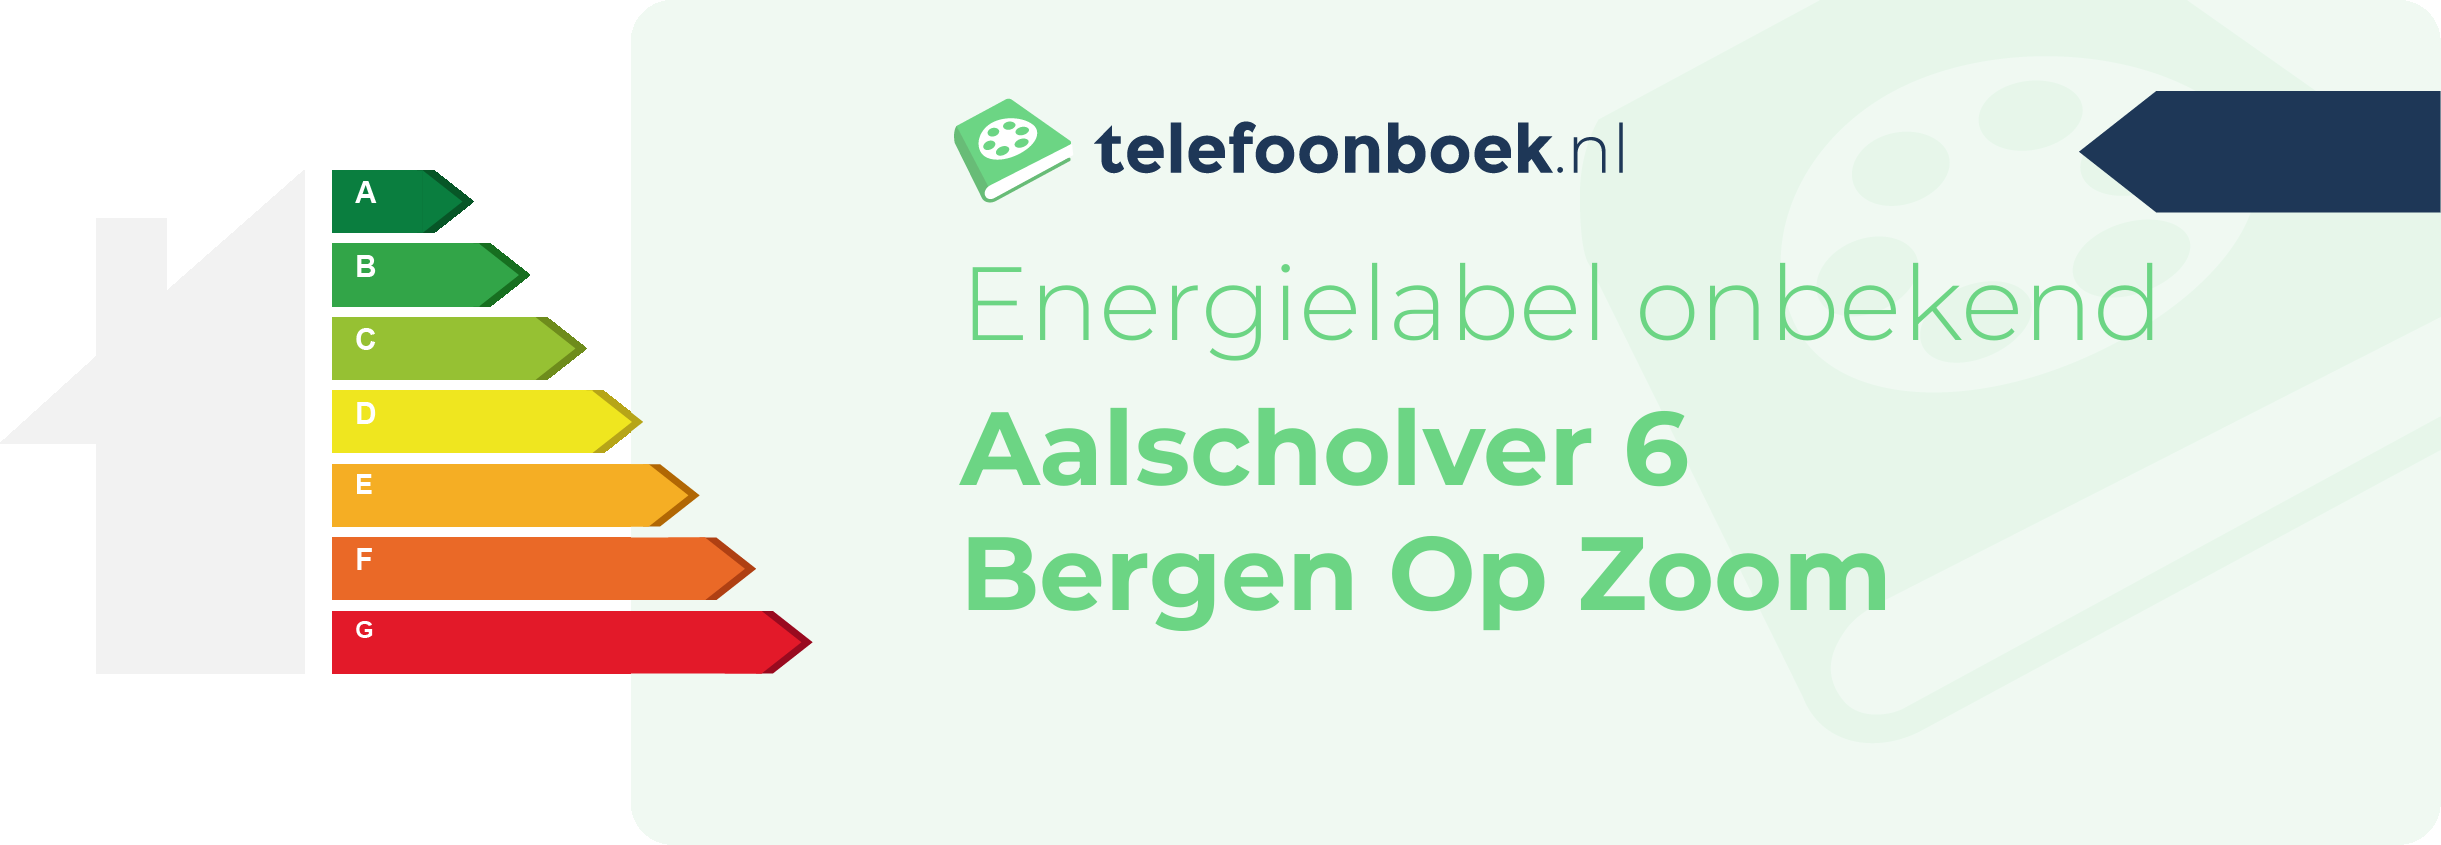 Energielabel Aalscholver 6 Bergen Op Zoom